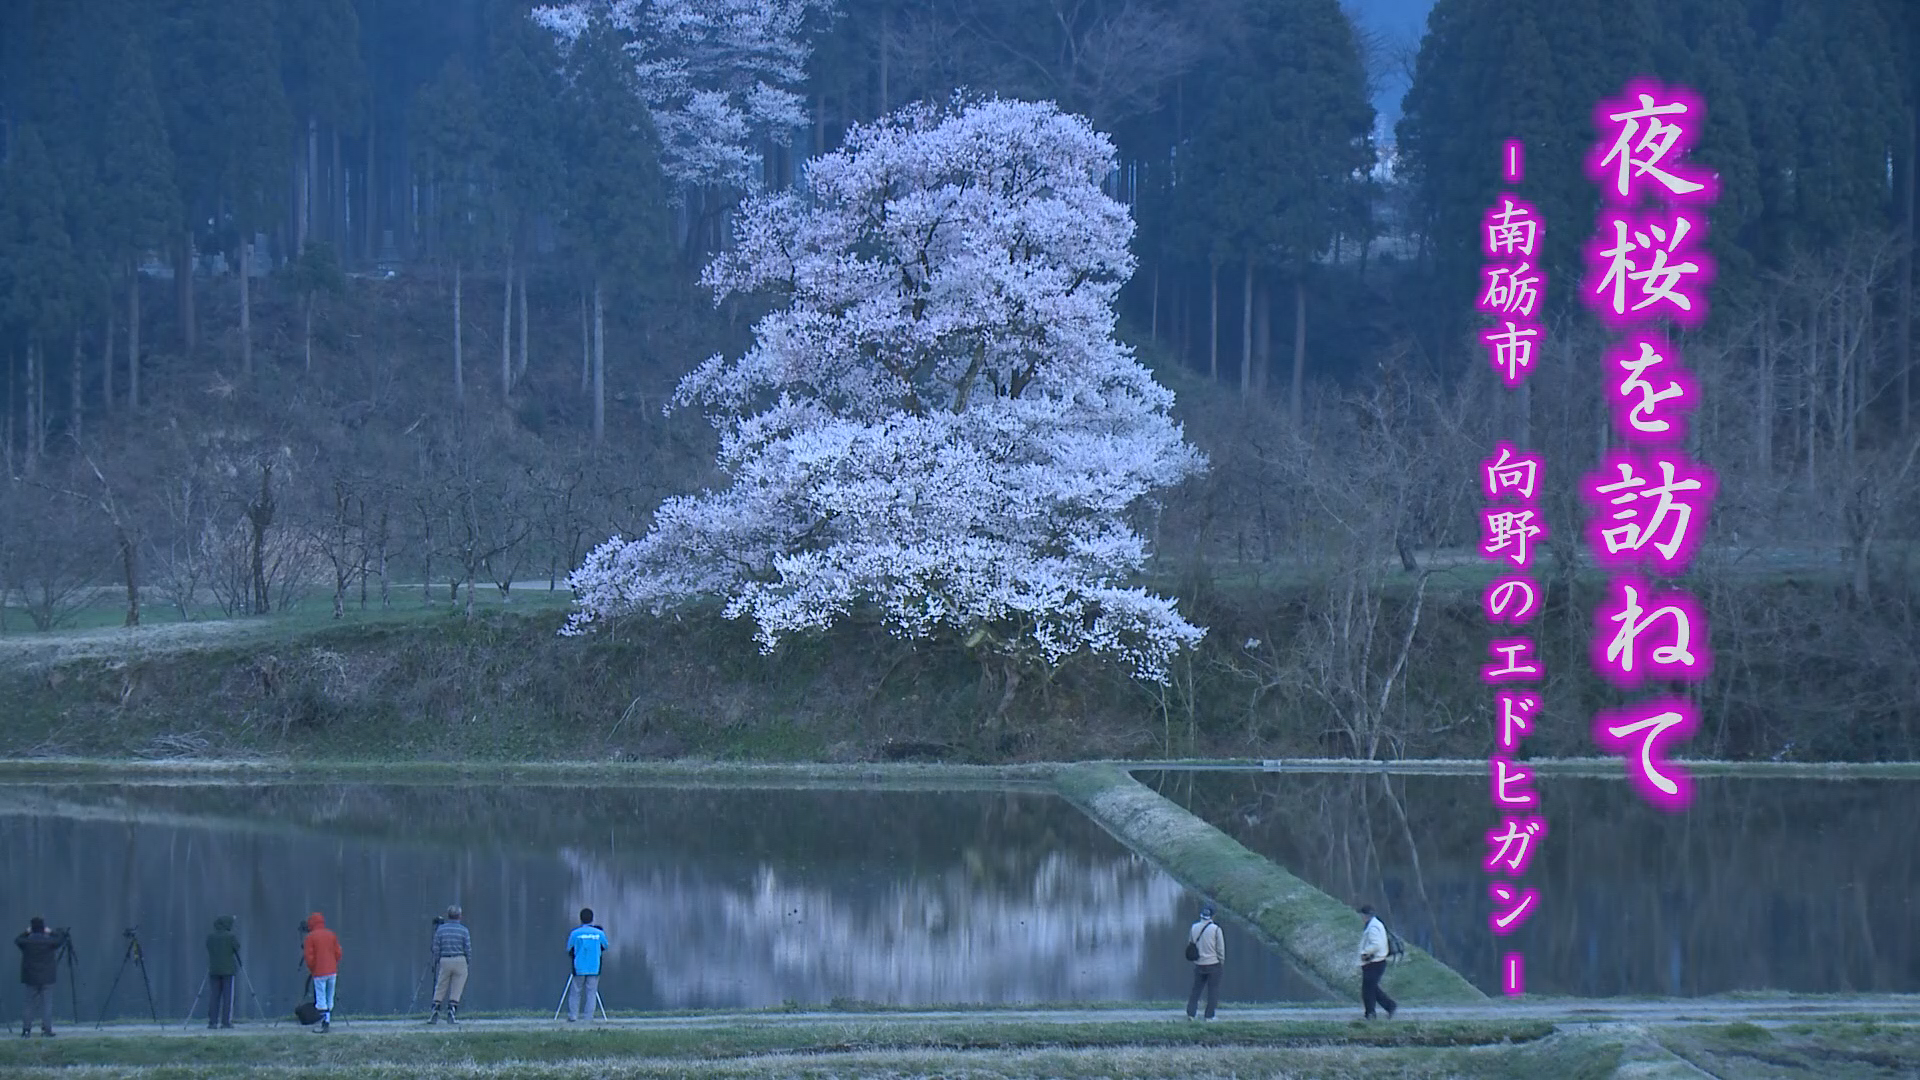 [473] 140411 夜桜を訪ねて 〜向野のエドヒガン〜